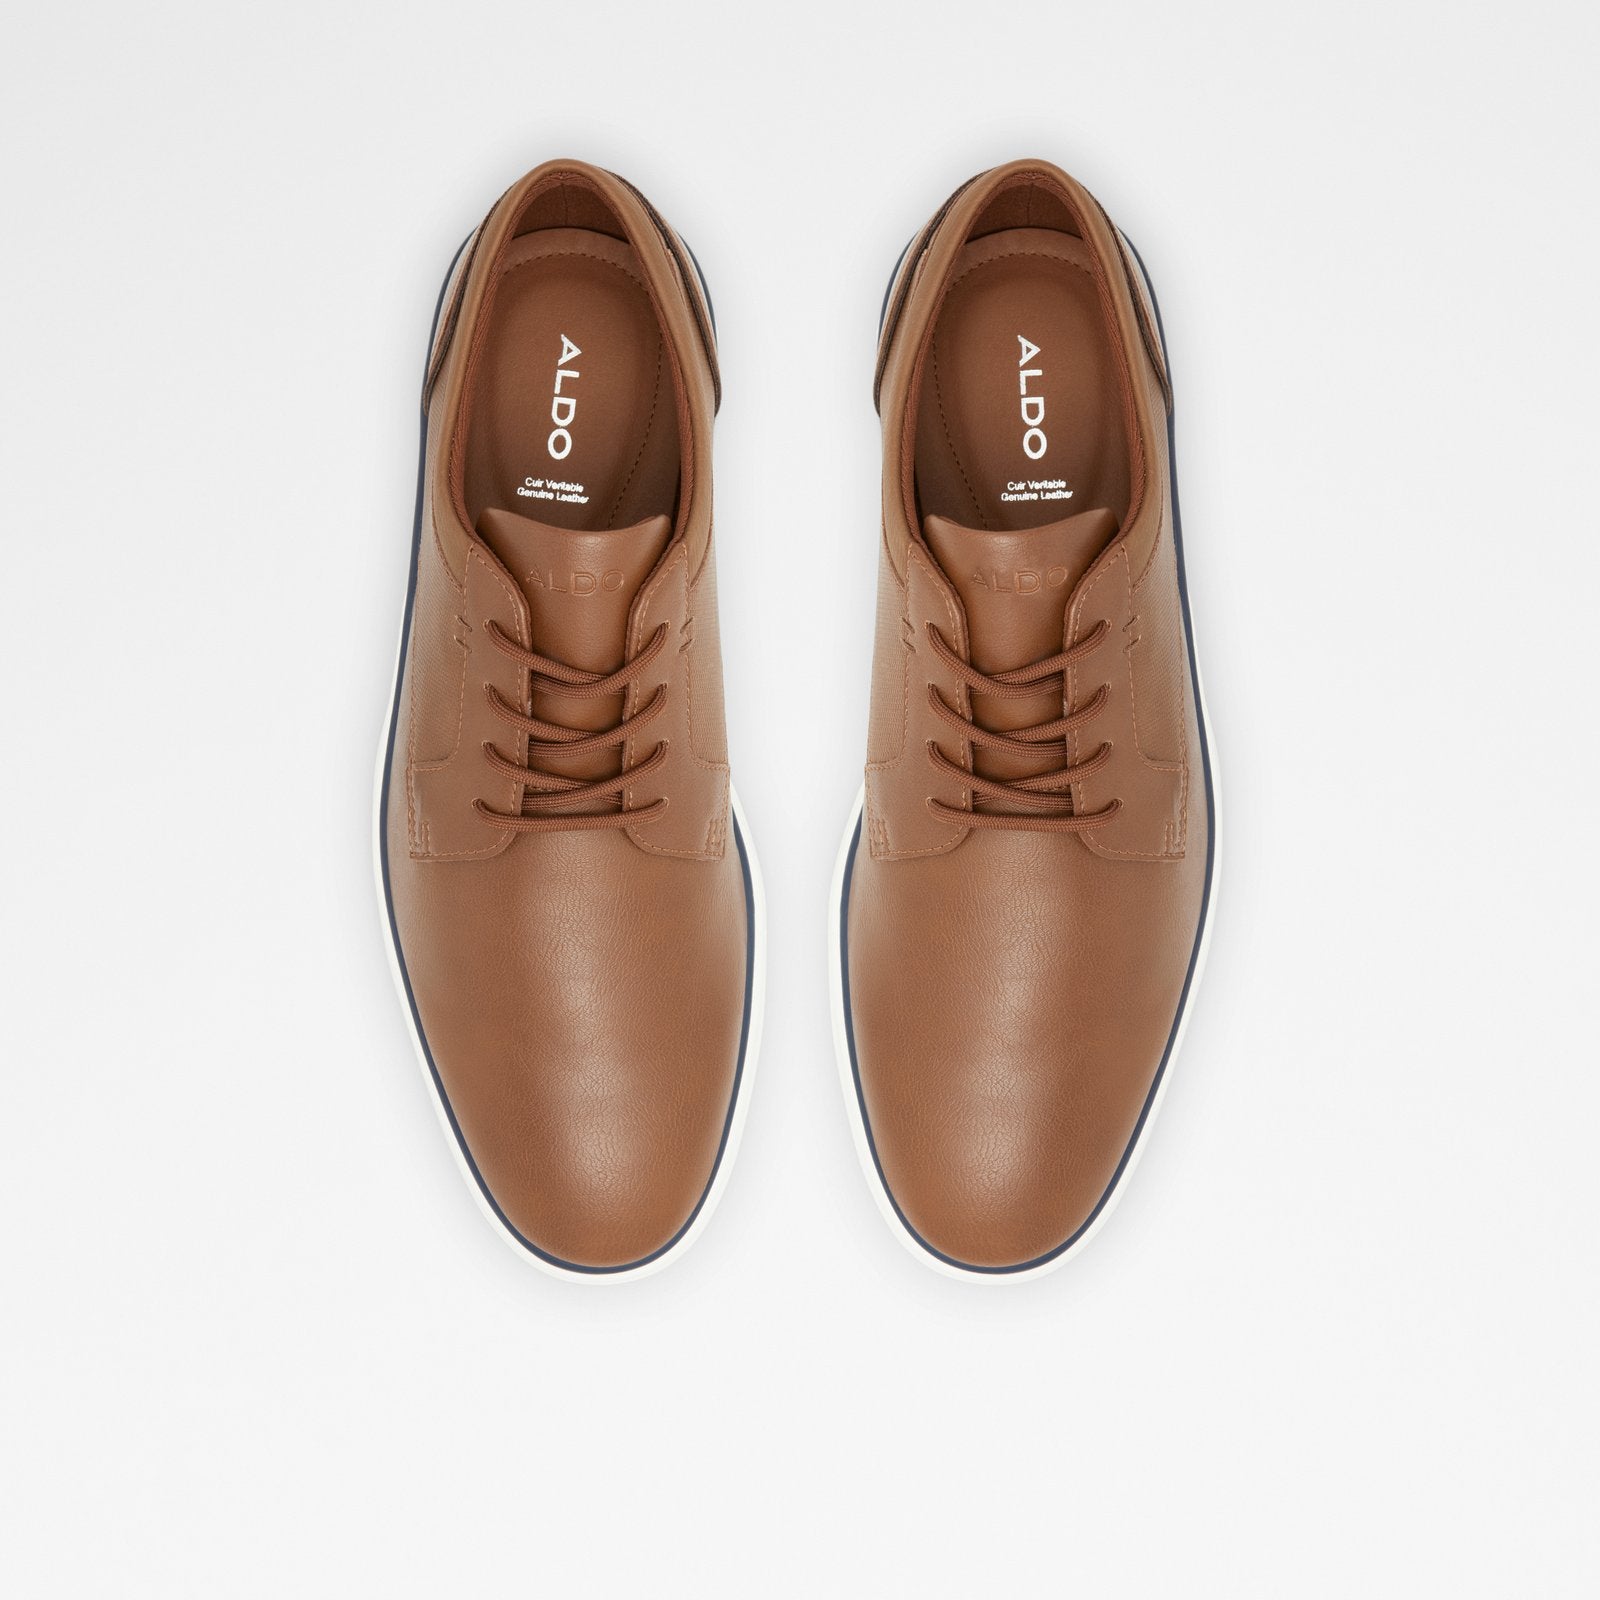 Dividend Men Shoes - Cognac - ALDO KSA